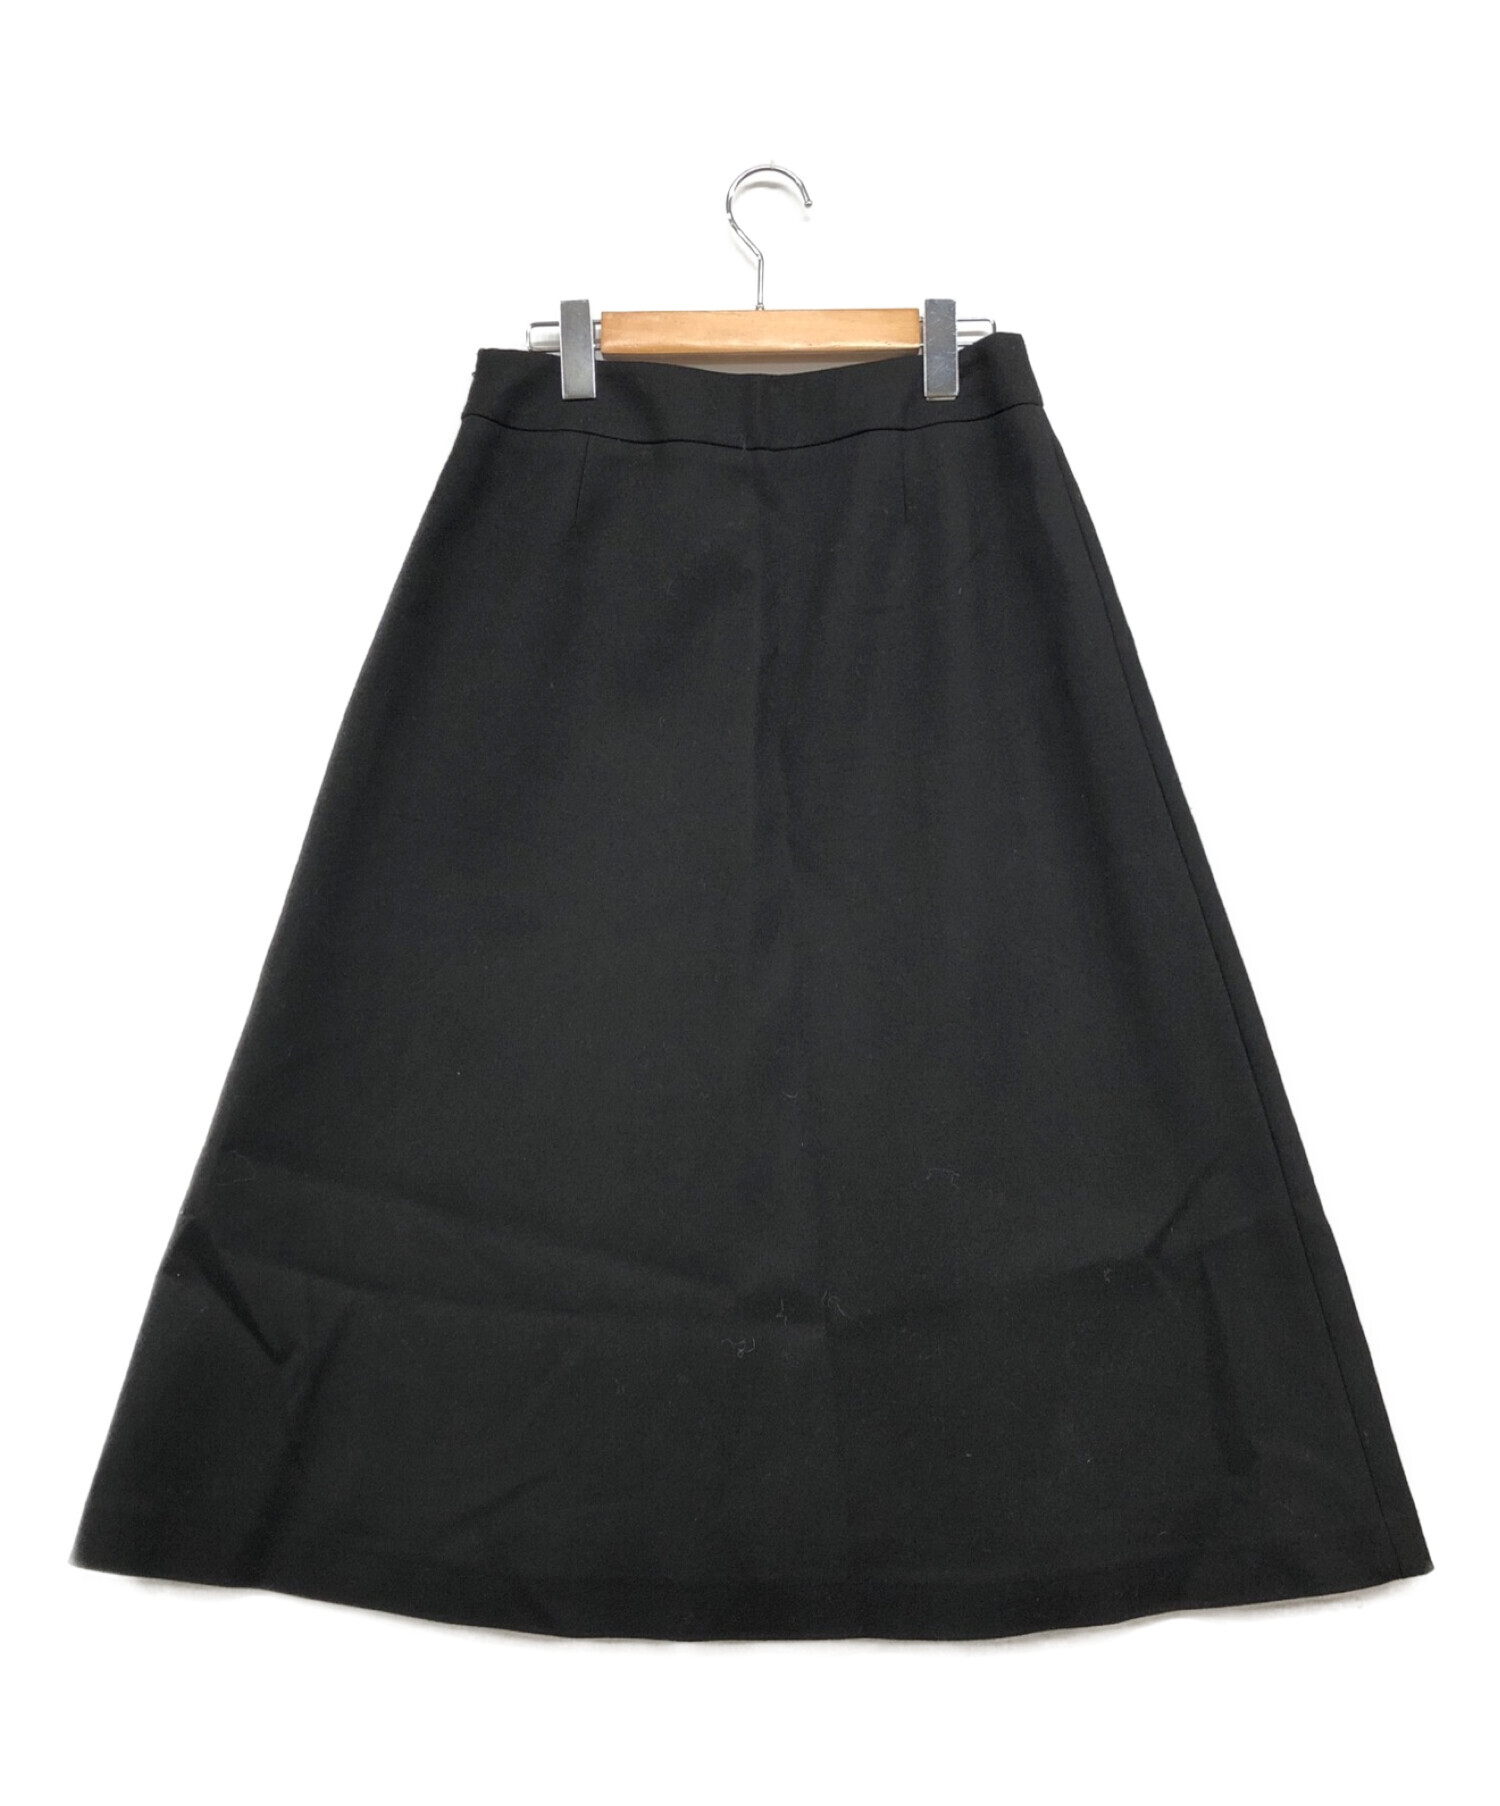 ADORE (アドーア) ファインコードレース切り替えスカート ブラック サイズ:36